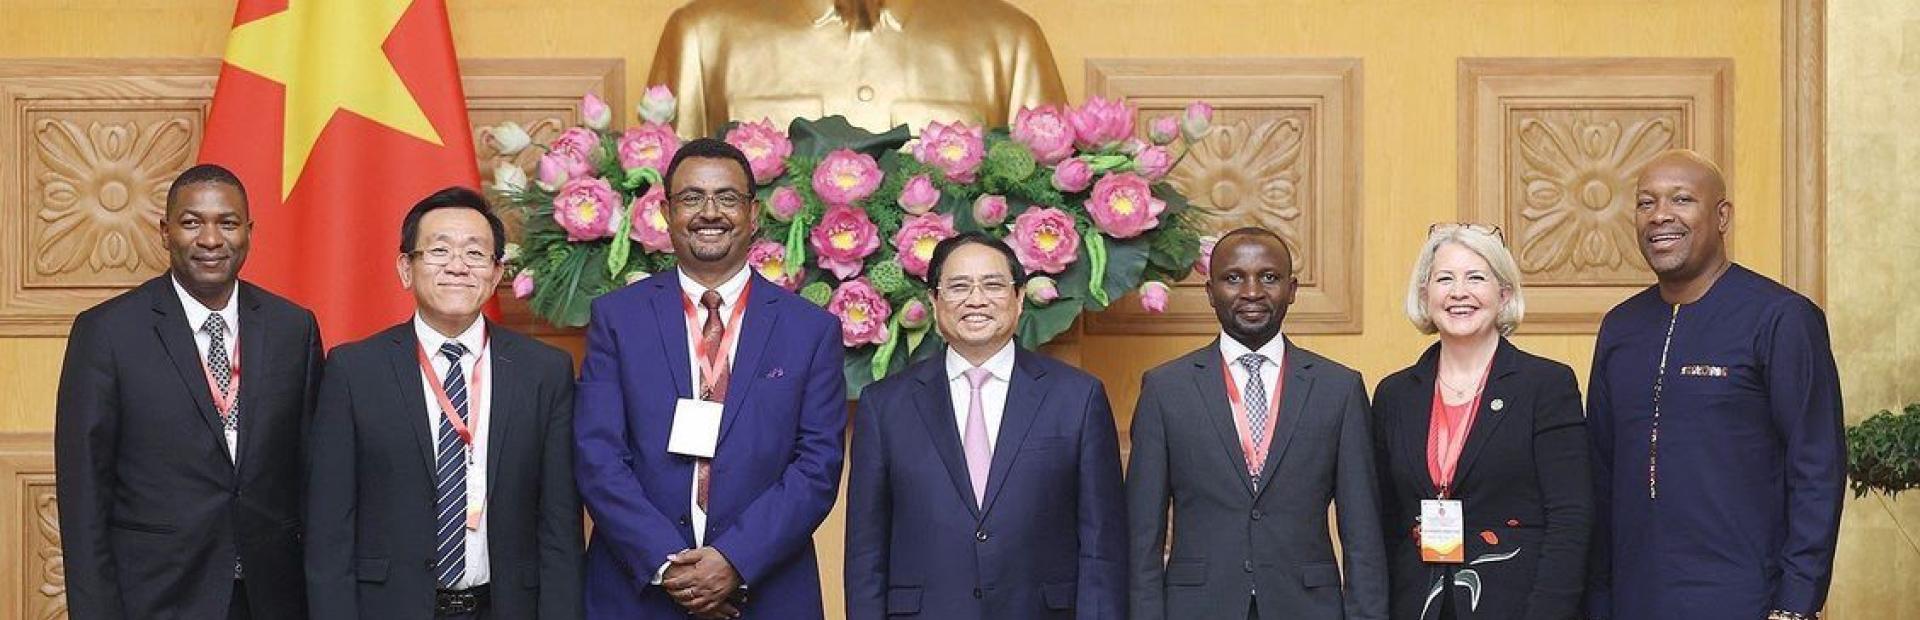 El primer Ministro de Vietnam, Phạm Minh Chính (centro) recibió a las autoridades participantes en la Conferencia. A la derecha, el Ministro de Agricultura, Forestación, Pesca, Transformación Rural, Industria y Trabajo de San Vicente y Las Granadinas, Saboto Caesar.